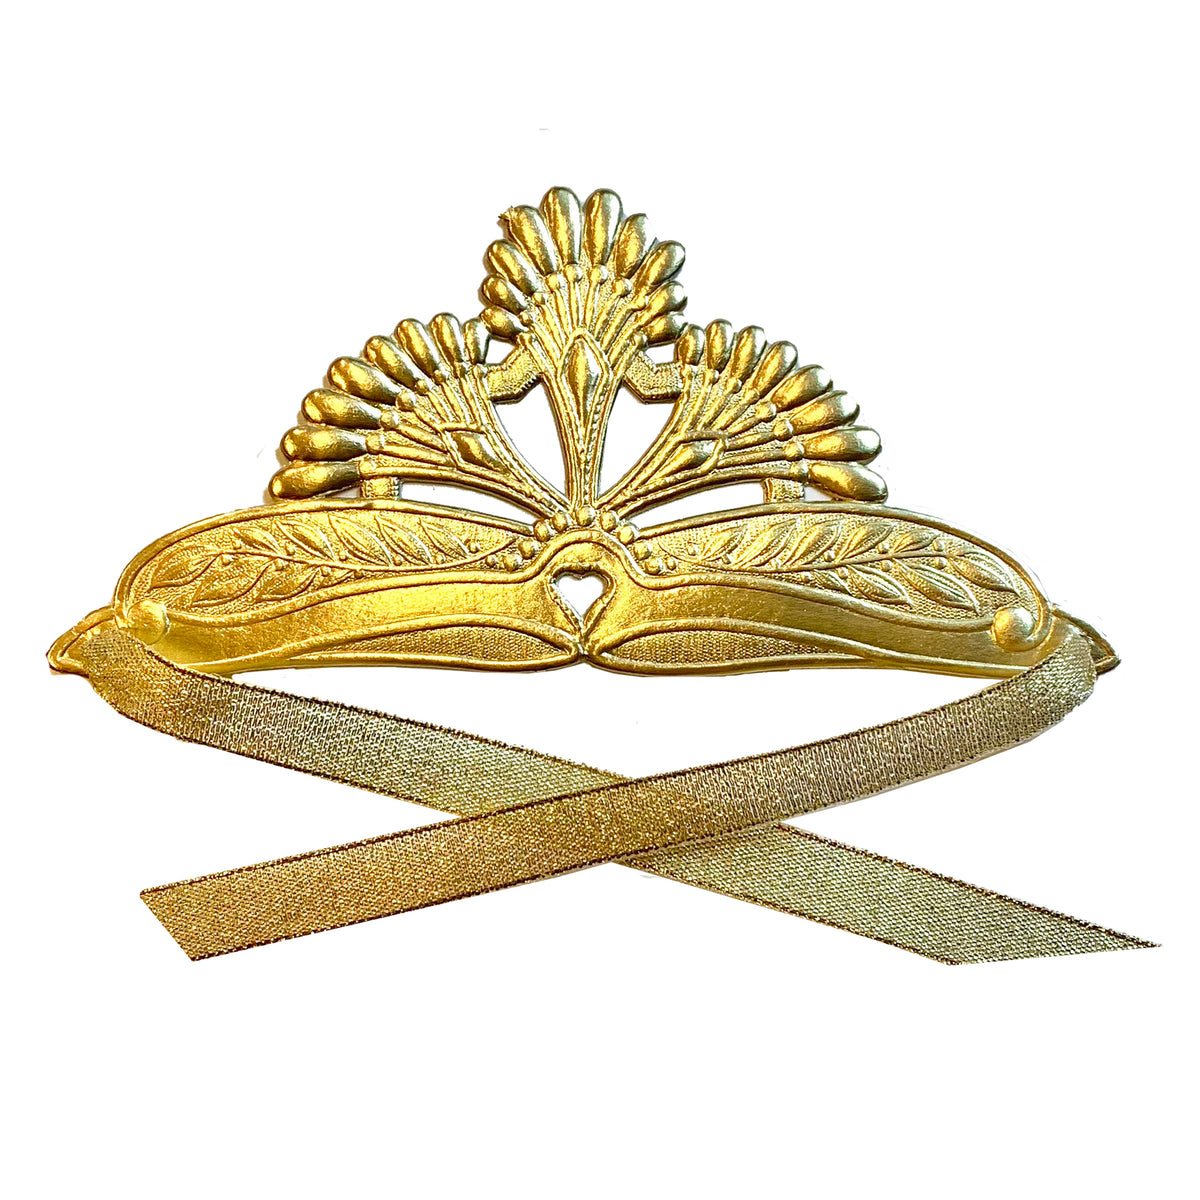 Mini Olde World Tiara Crown  - with ribbon